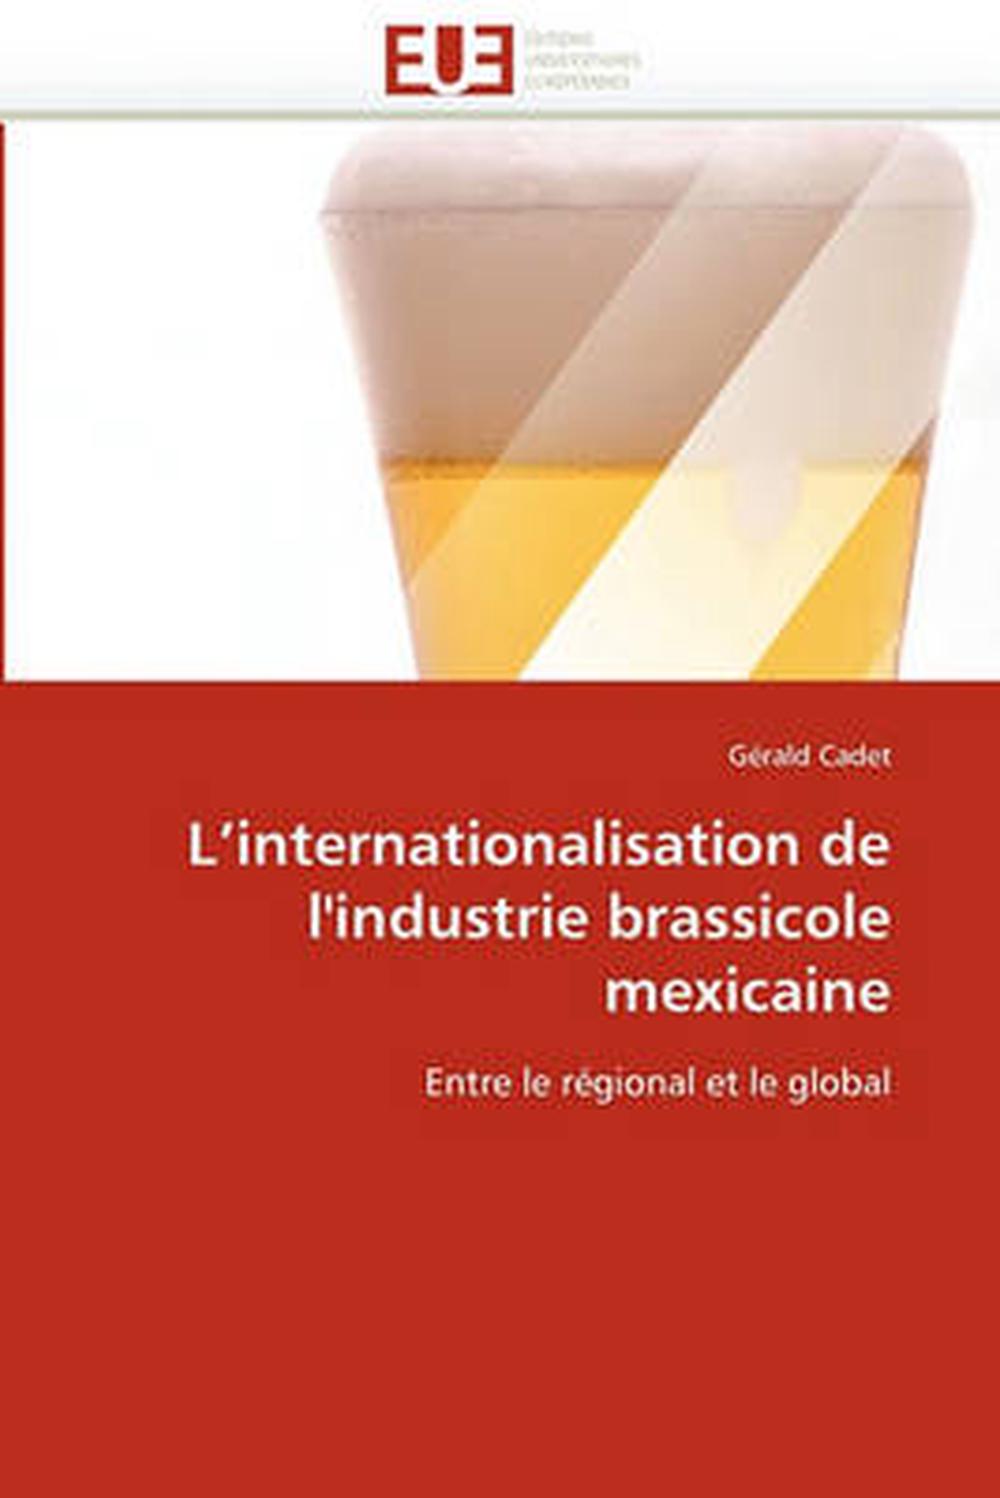 L'Internationalisation de L'Industrie Brassicole Mexicaine: Entre le r?(C)gional - Photo 1/1